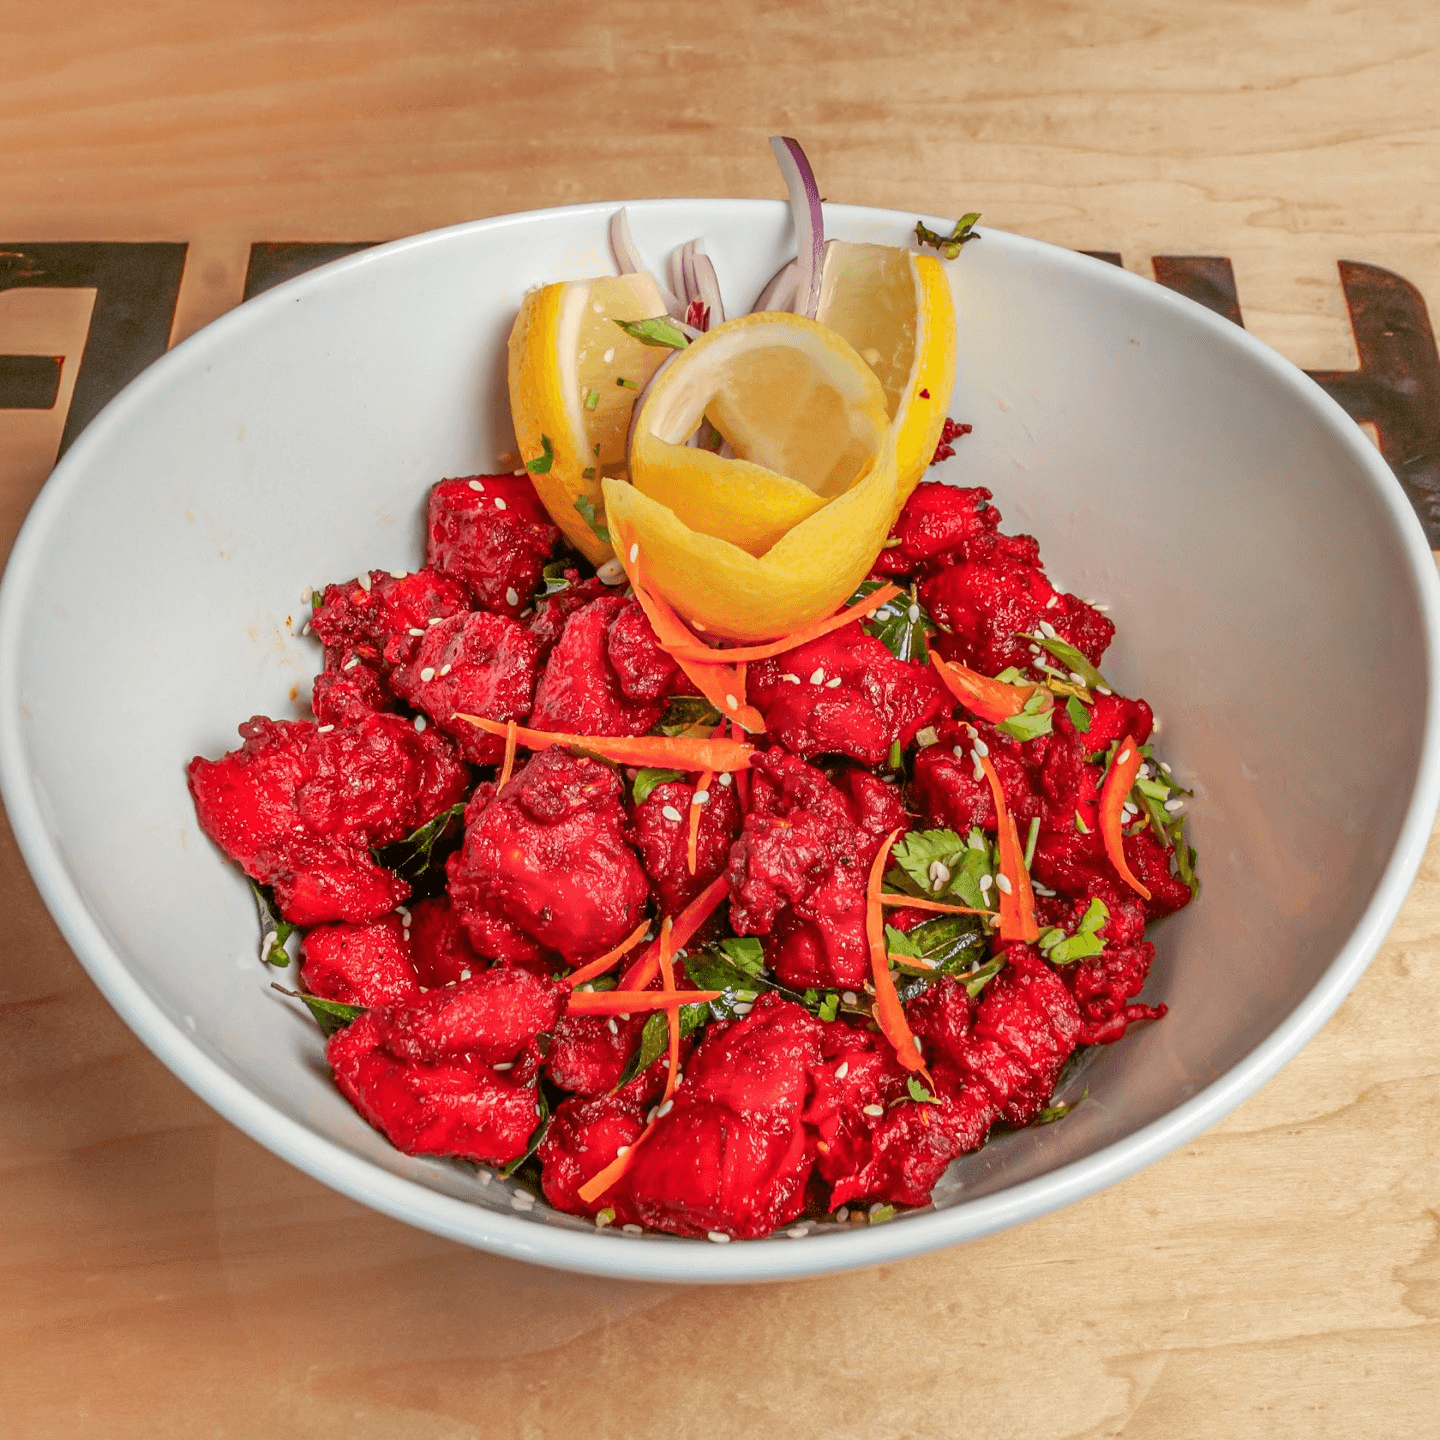 Crispy, Spicy, and Irresistibly Delicious! 🔥